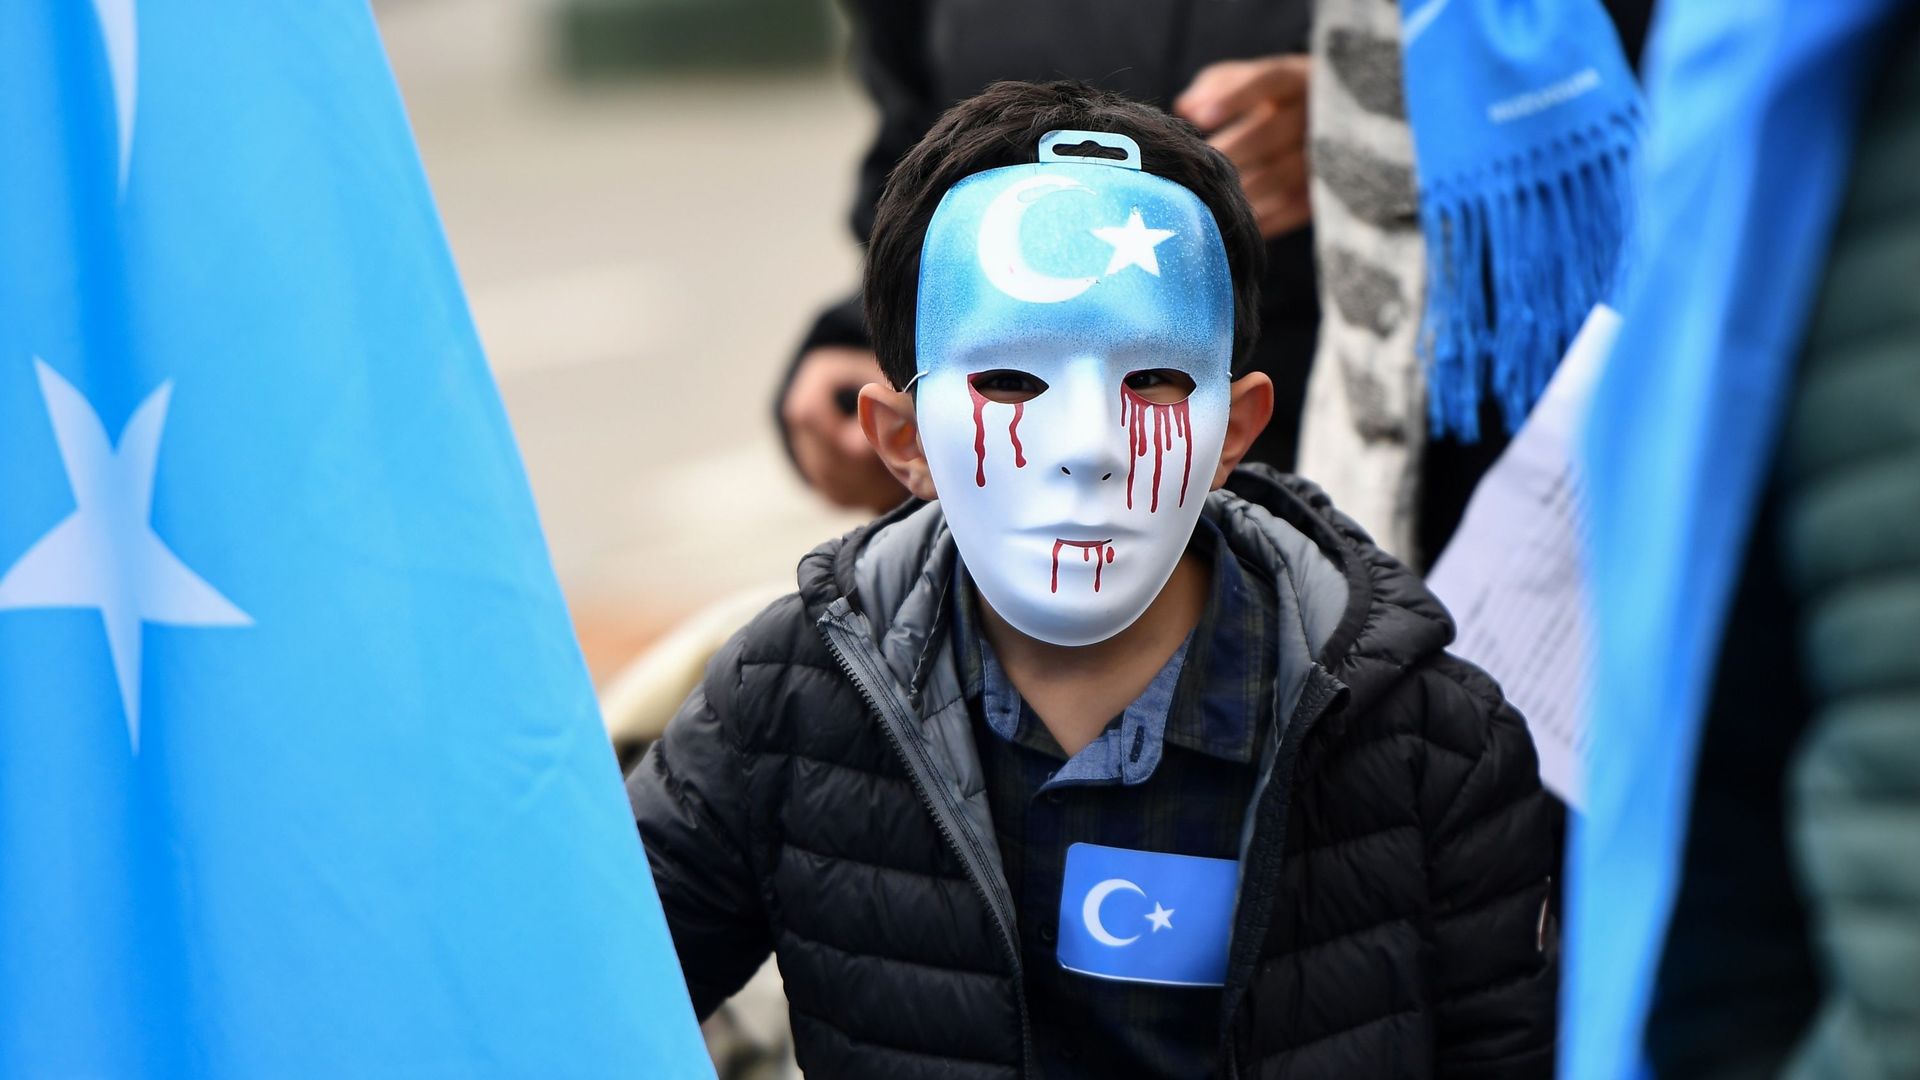 Comme en 2018, autour des institutions européennes, la communauté ouïghoure n'a de cesse de dénoncer les atteintes aux droits humains perpétrées par la Chine. 